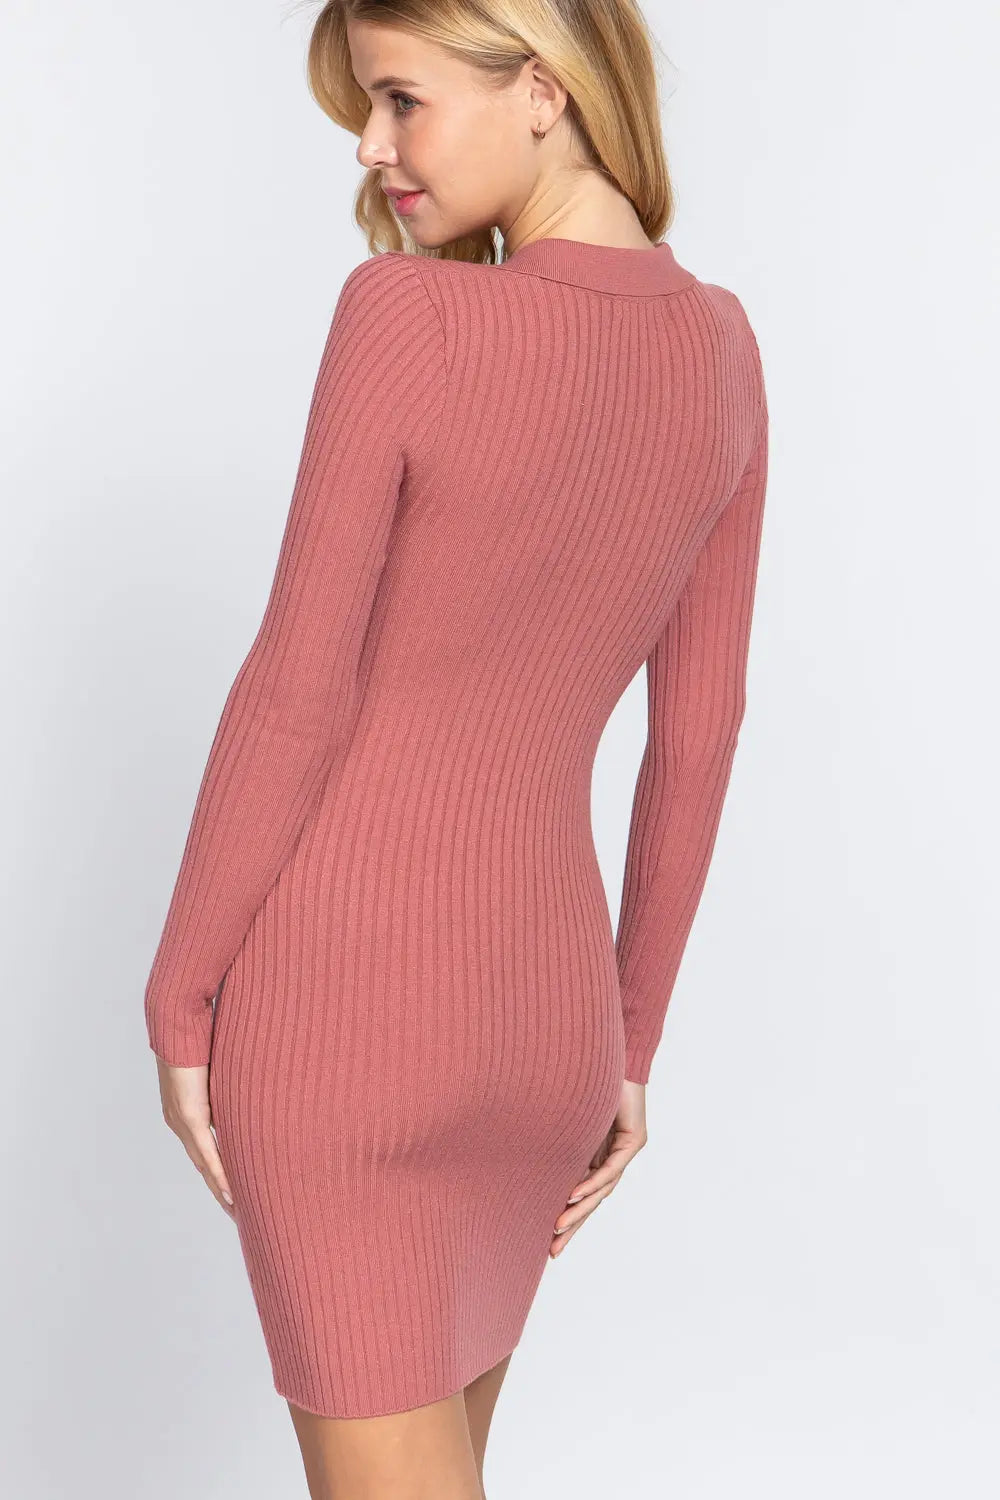 Long Slv V-neck Sweater Rib Mini Dress Sunny EvE Fashion